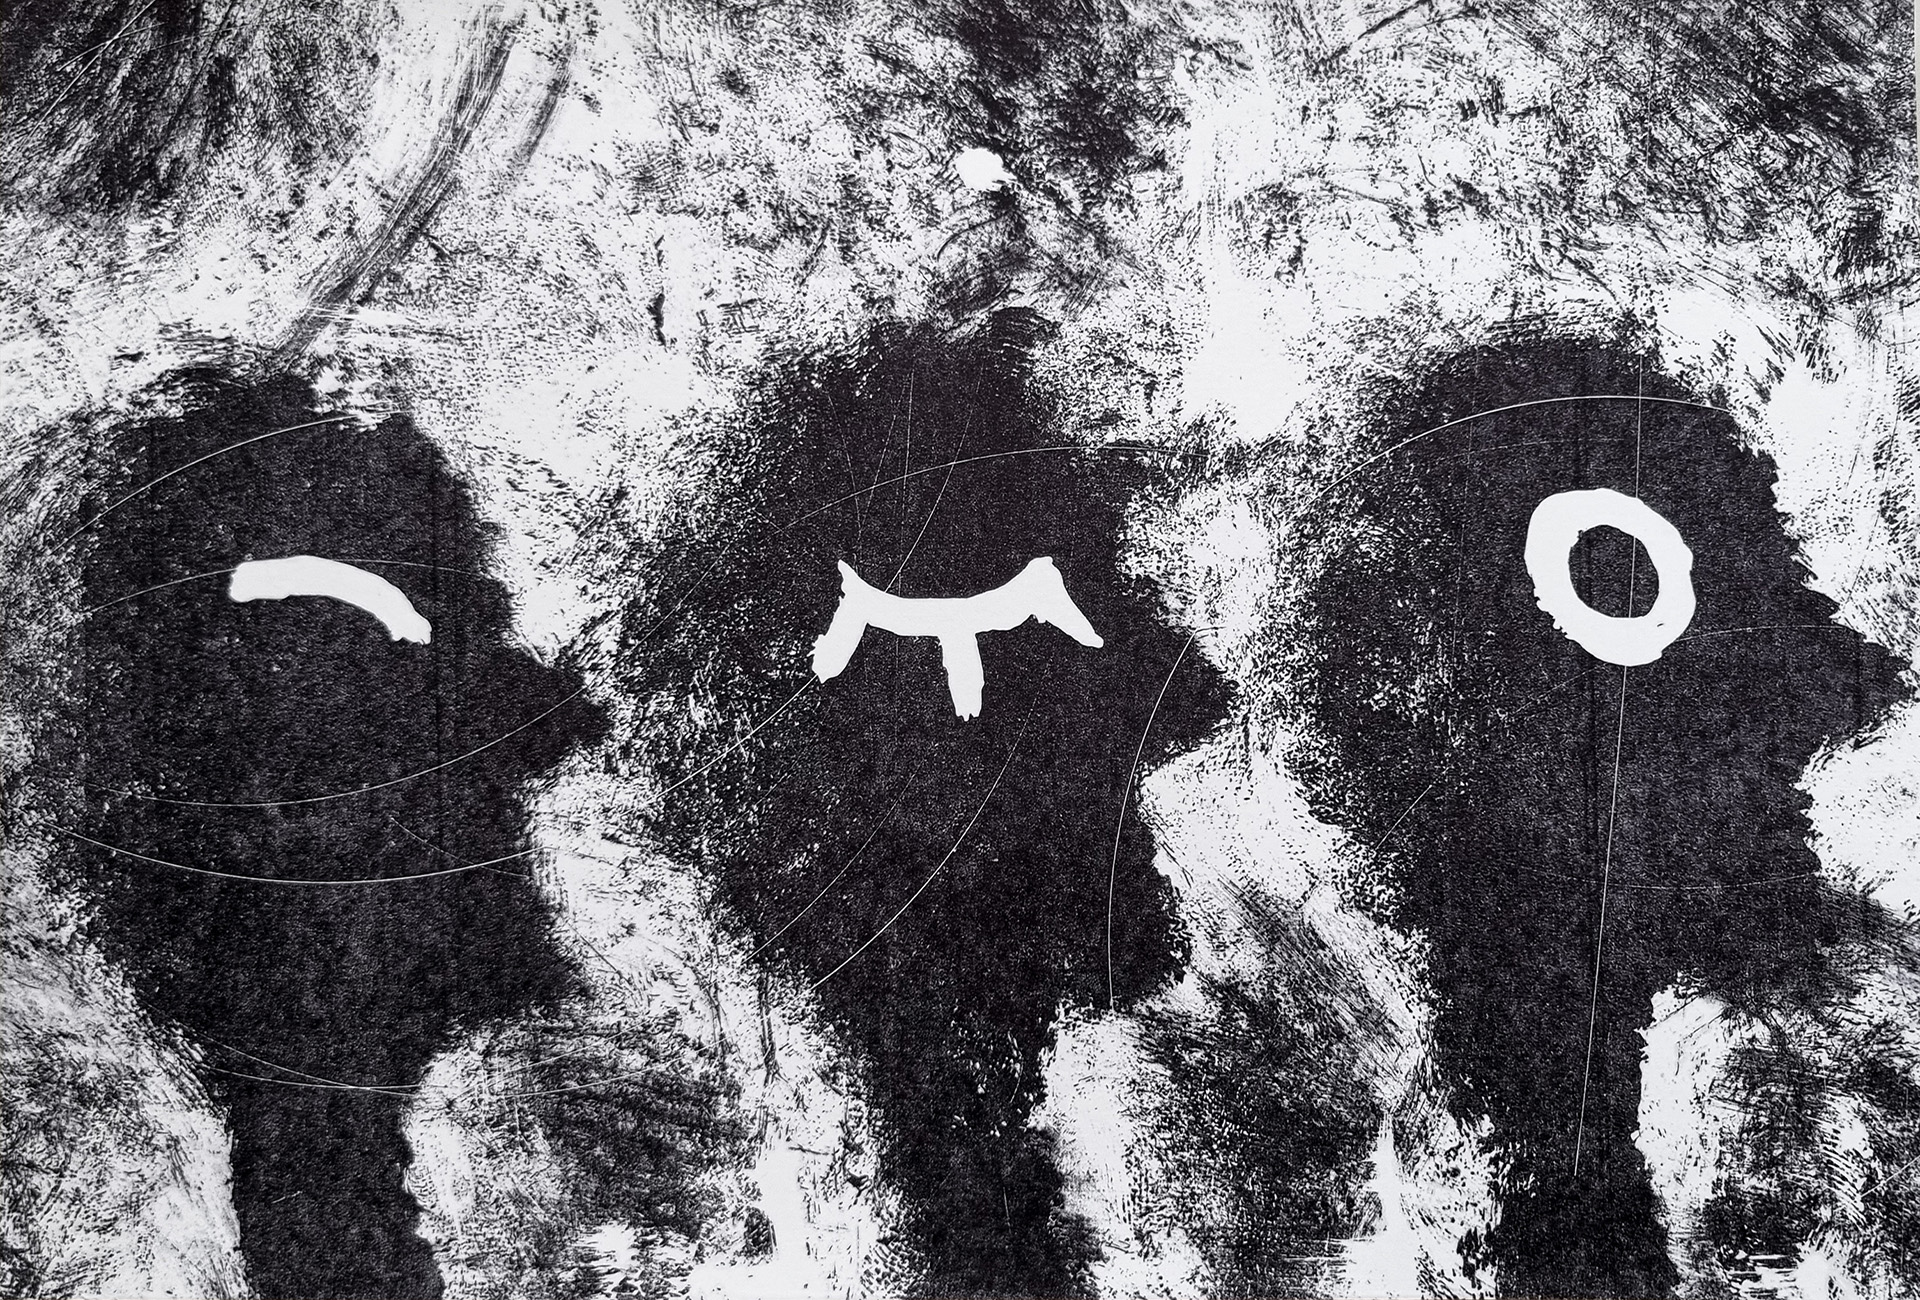 Praca przedstawia rysunek uproszczonych trzech sylwetek głów, różniących się od siebie zarysowaniem oczu, które pozostają białe.